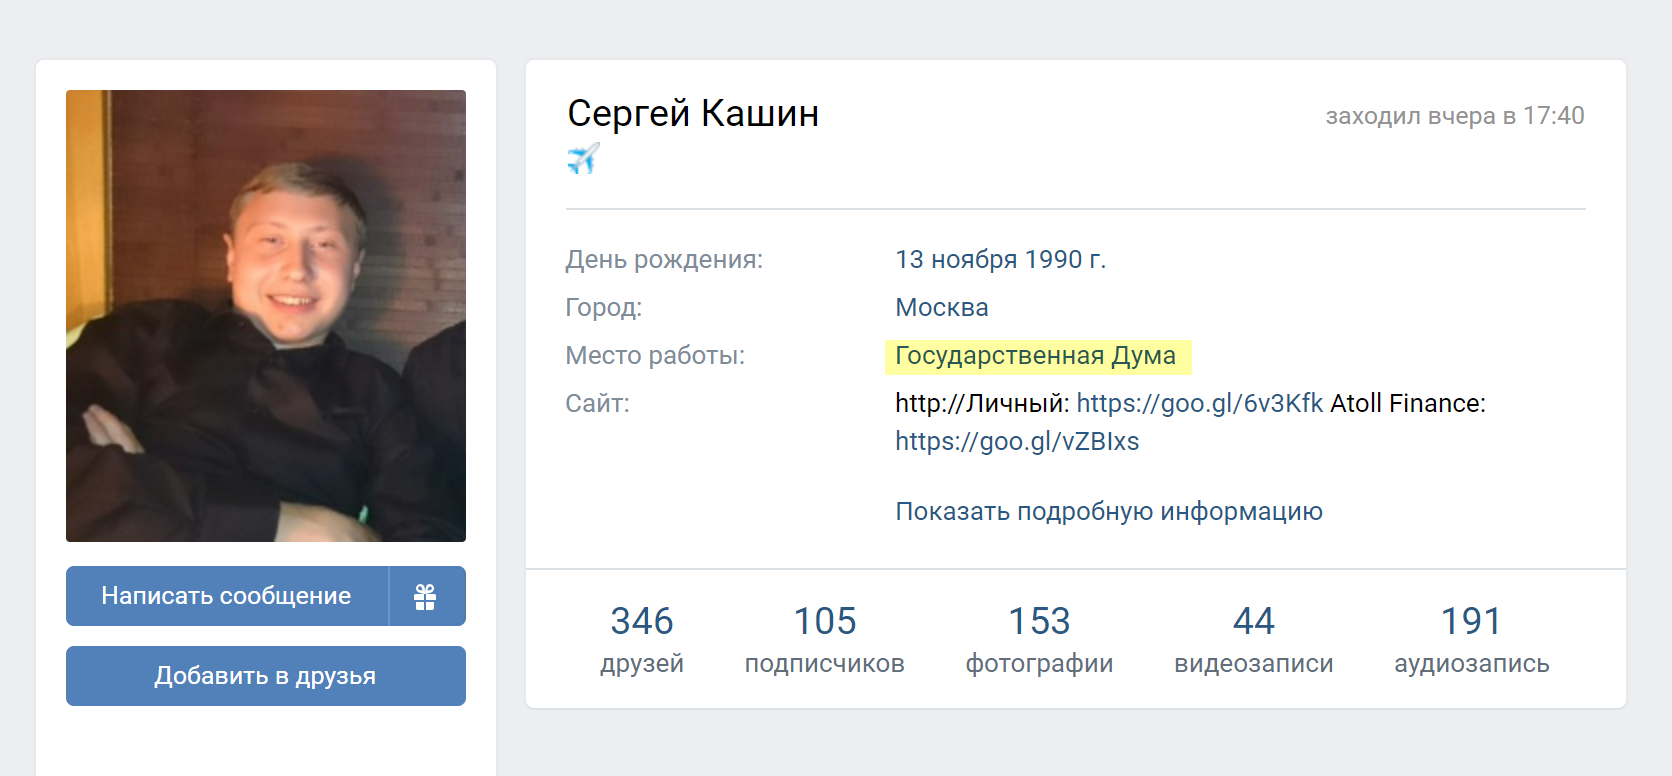 Во «Вконтакте» Кашин указывает в качестве места работы Государственную думу. Подтверждений этой информации я также не нашел